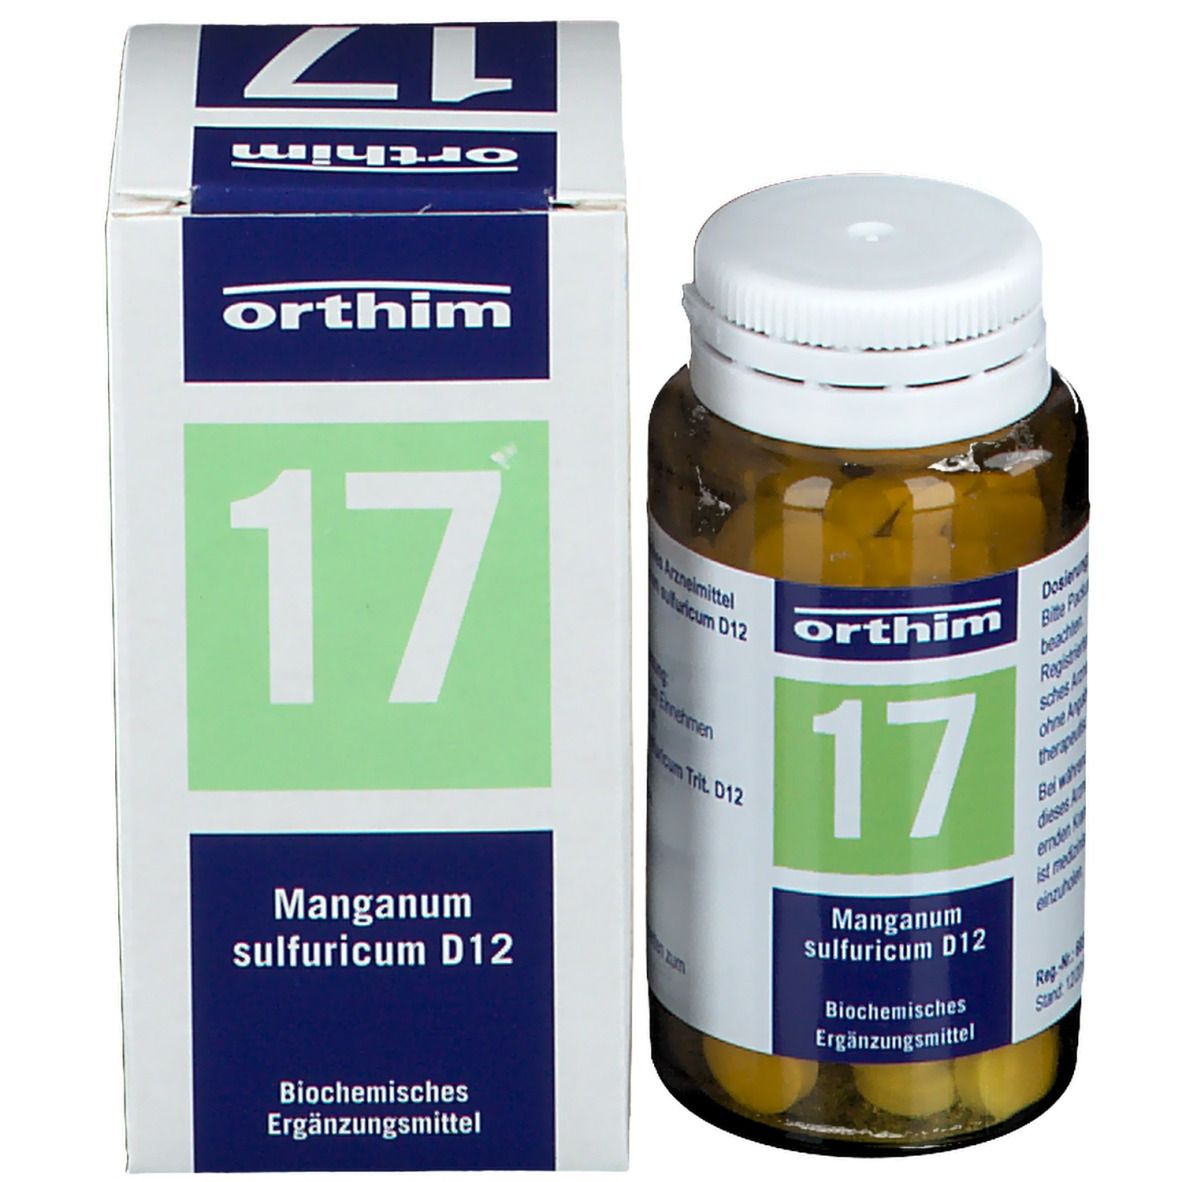 Biochemie orthim® Nr. 17 Manganum sulfuricum D12